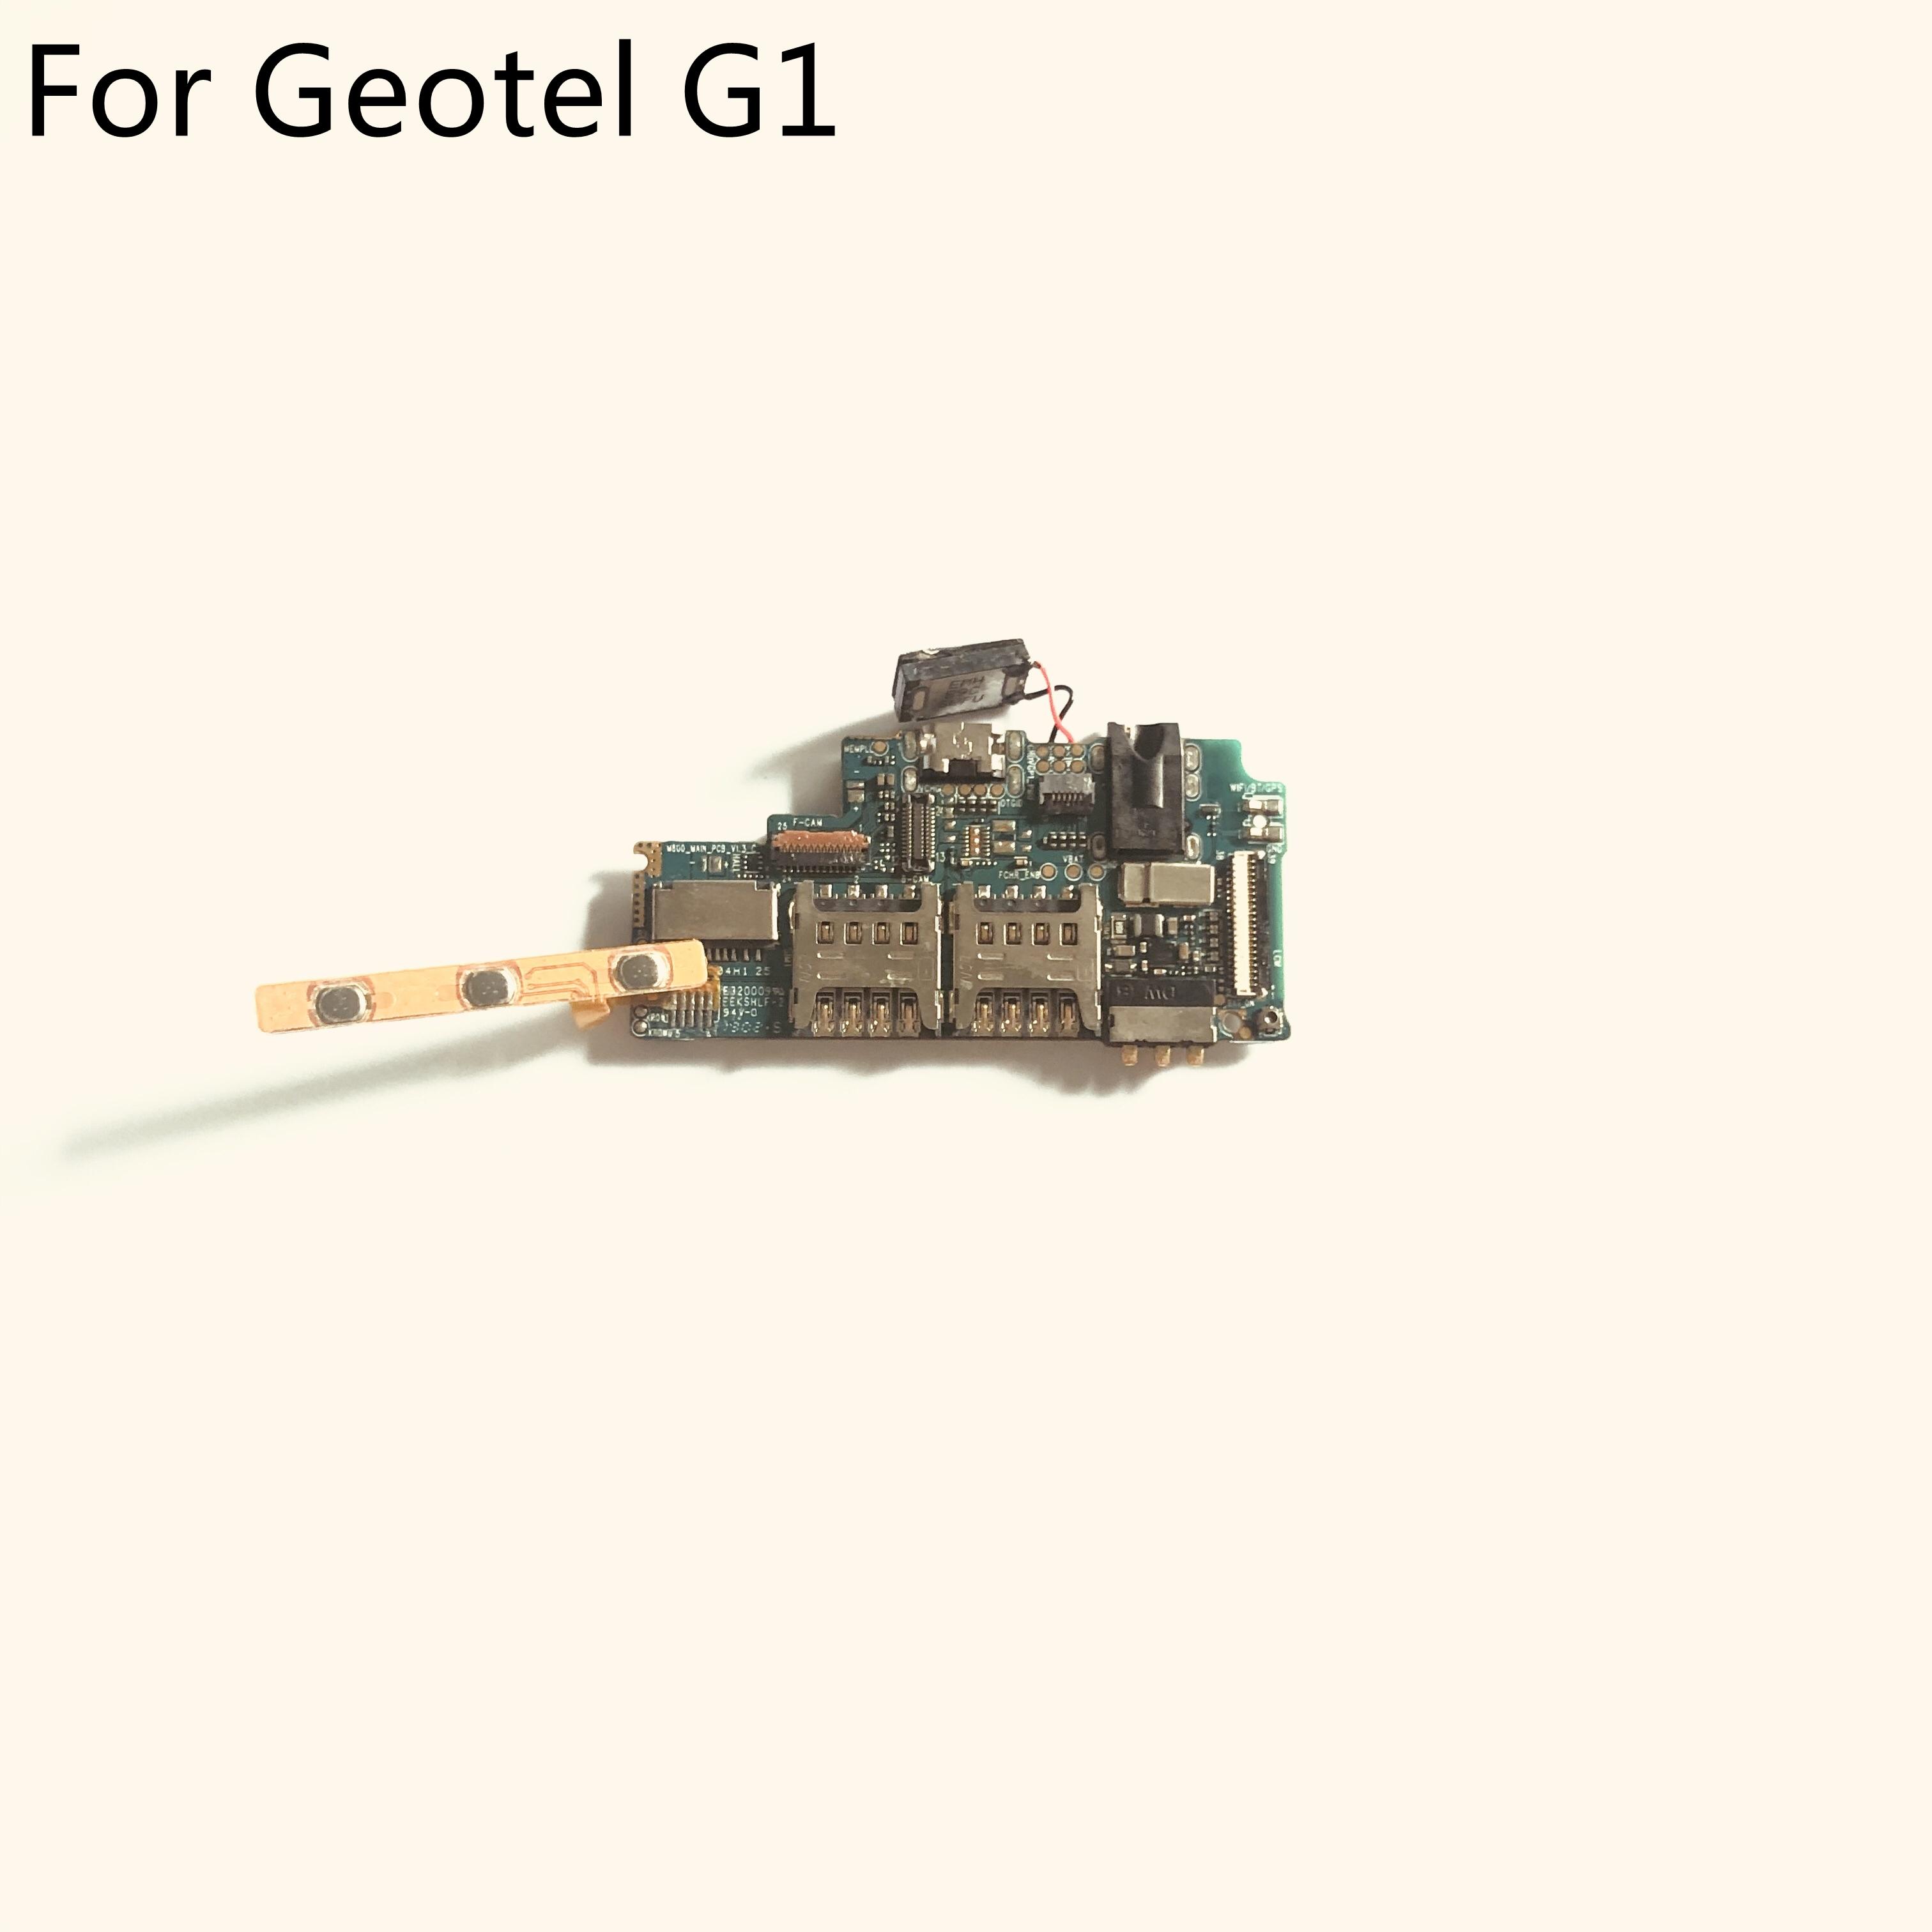 Изображение товара: Б/у материнская плата Geotel G1, 2 Гб ОЗУ + 16 Гб ПЗУ, для четырехъядерного процессора Geotel G1 MTK6580A, 5,0 дюйма, 1280x720, бесплатная доставка